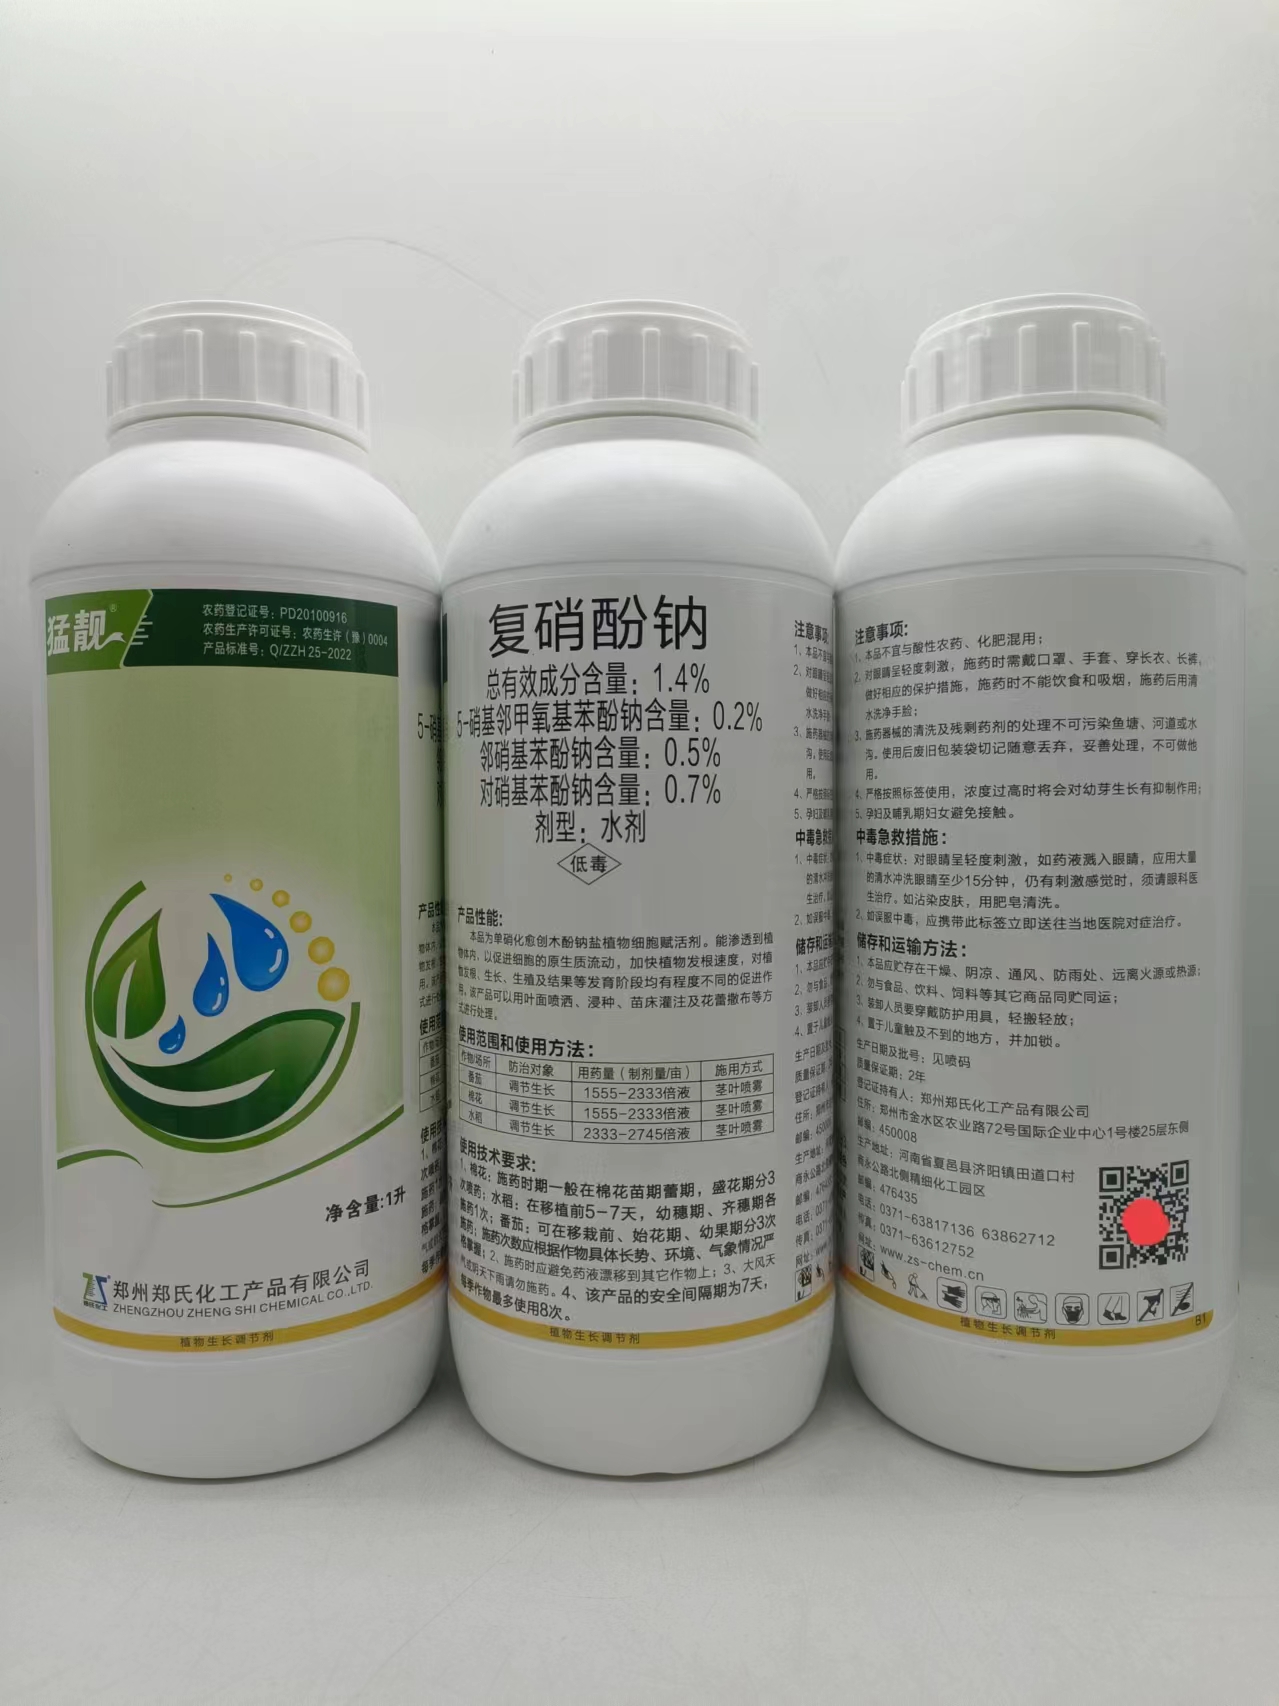 郑氏化工猛靓-1.4%复硝酚钠植物生长调节剂